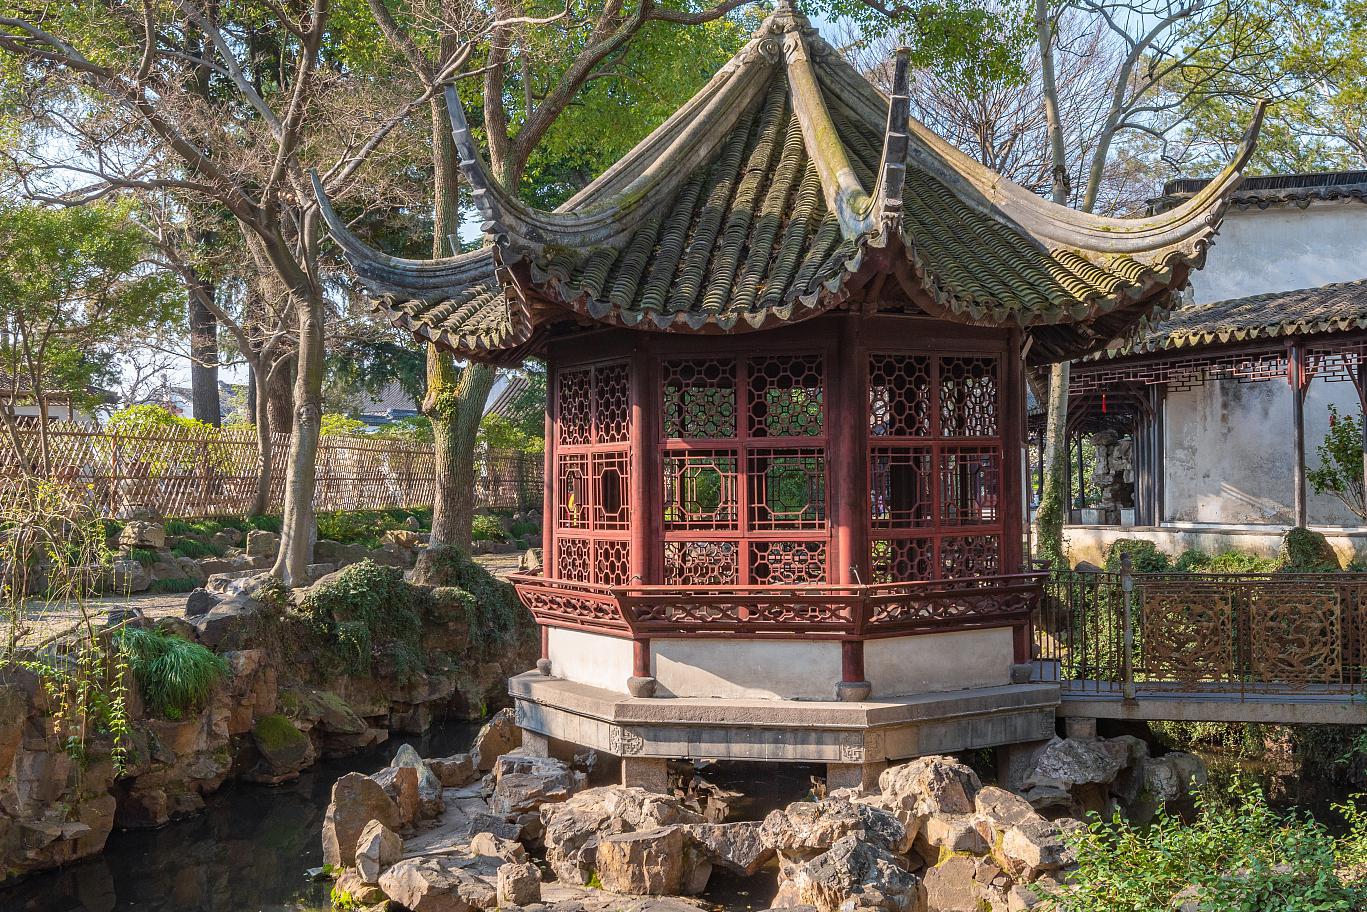 作为苏州四大名园之一,拙政园是一处展现中国古典园林艺术精华的世界